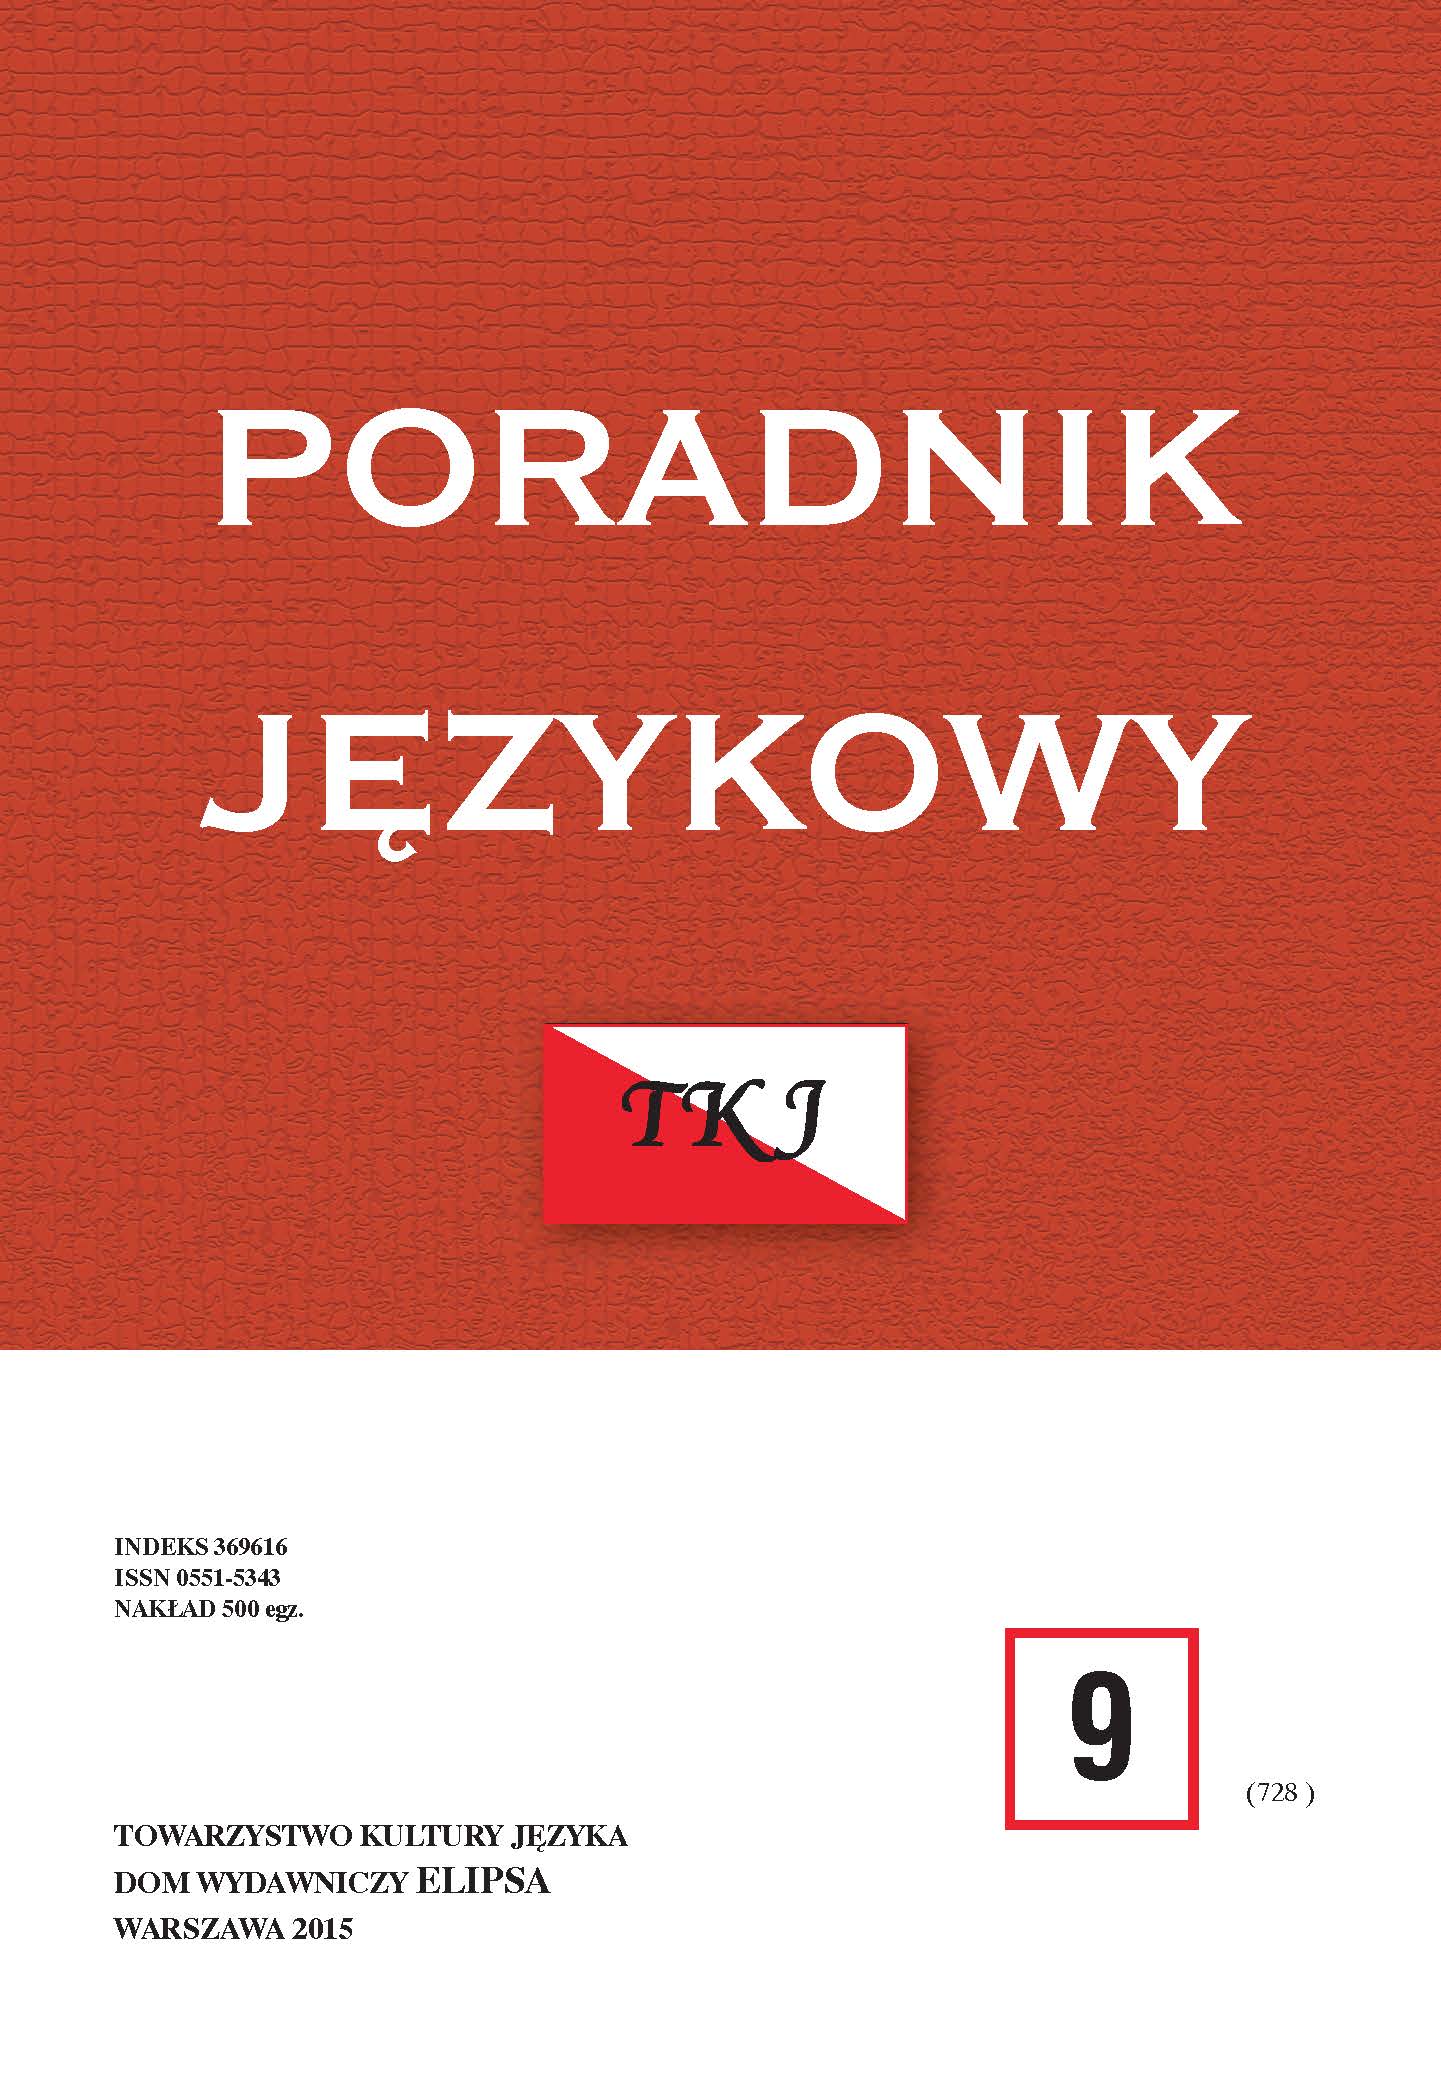 JUSTYNA POMIERSKA, PRZYSŁOWIA KASZUBSKIE. STUDIUM Z PAREMIOGRAFII I PAREMIOLOGII, Gdańsk 2013, ss. 696